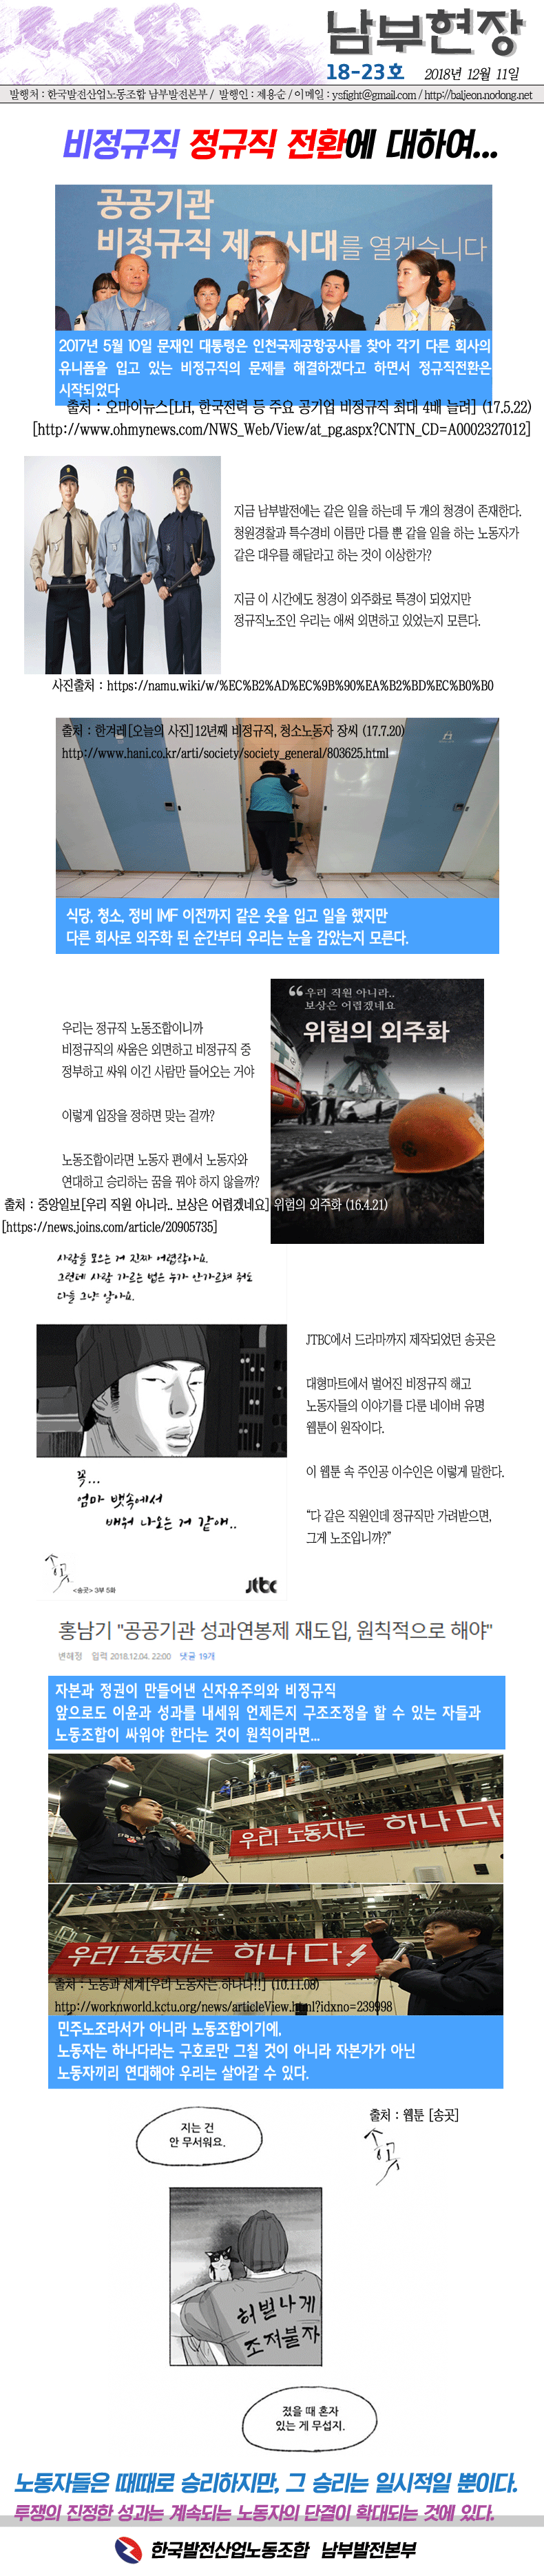 남부웹진18-23호-카드뉴스-출처수정.gif